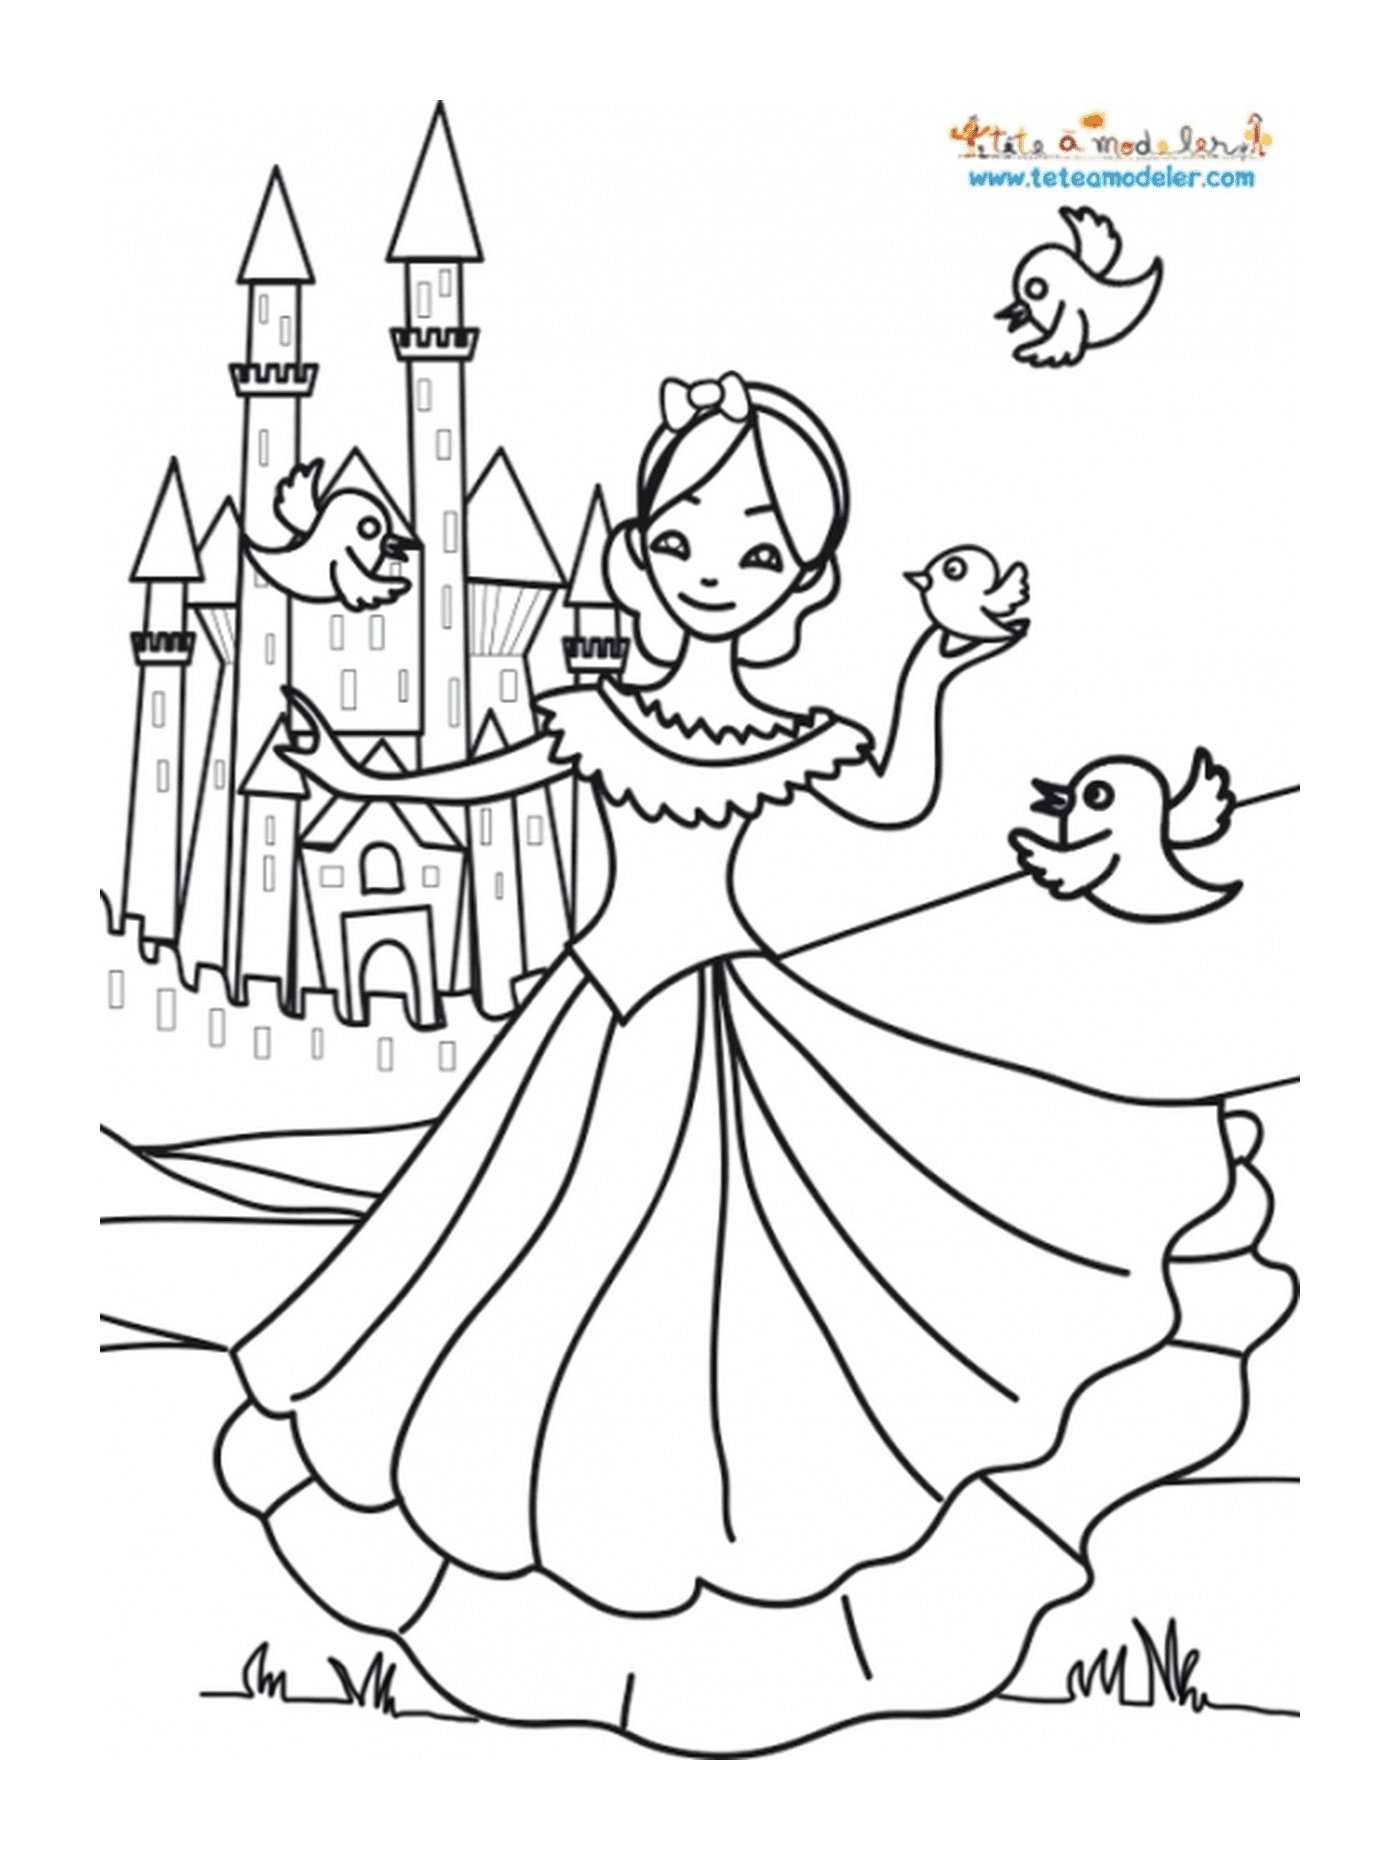  Uma menina na frente de um castelo, como uma princesa 